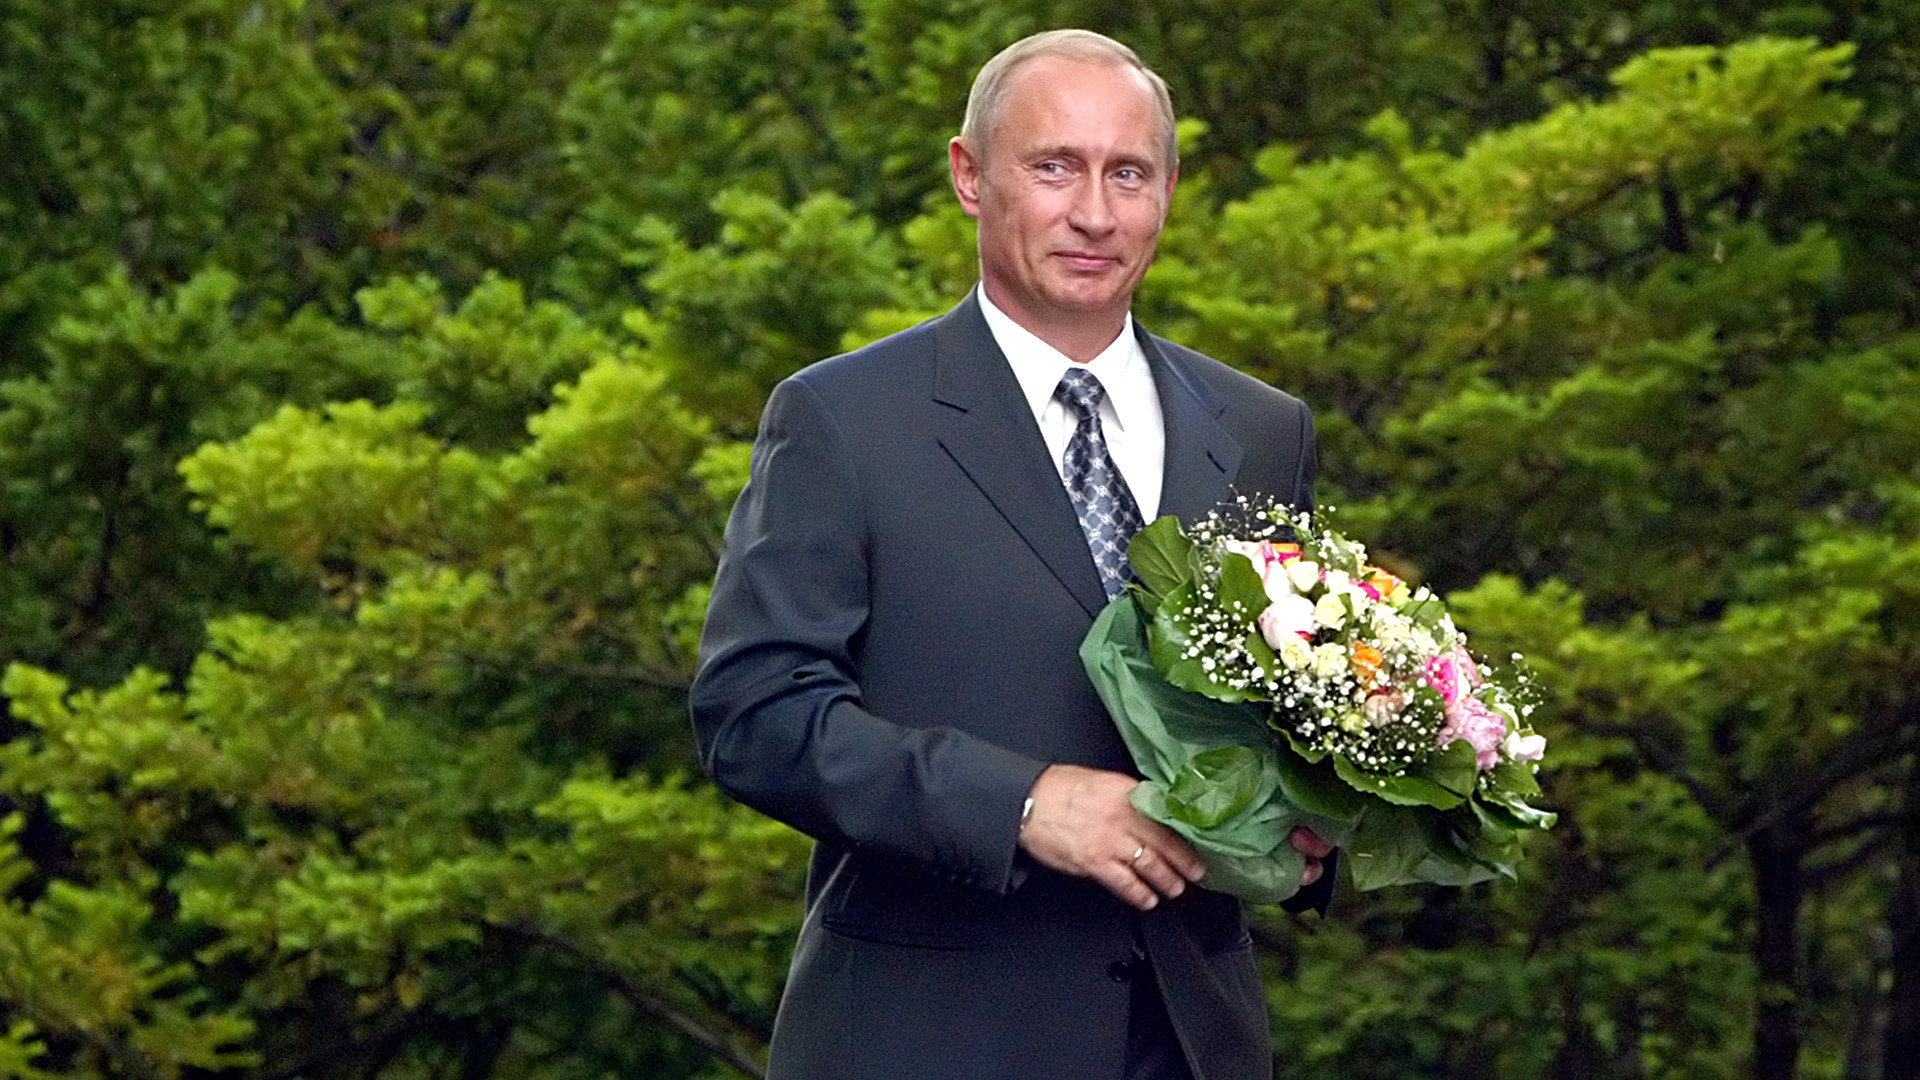 完璧な紳士 プーチン大統領からの花束 ロシア ビヨンド